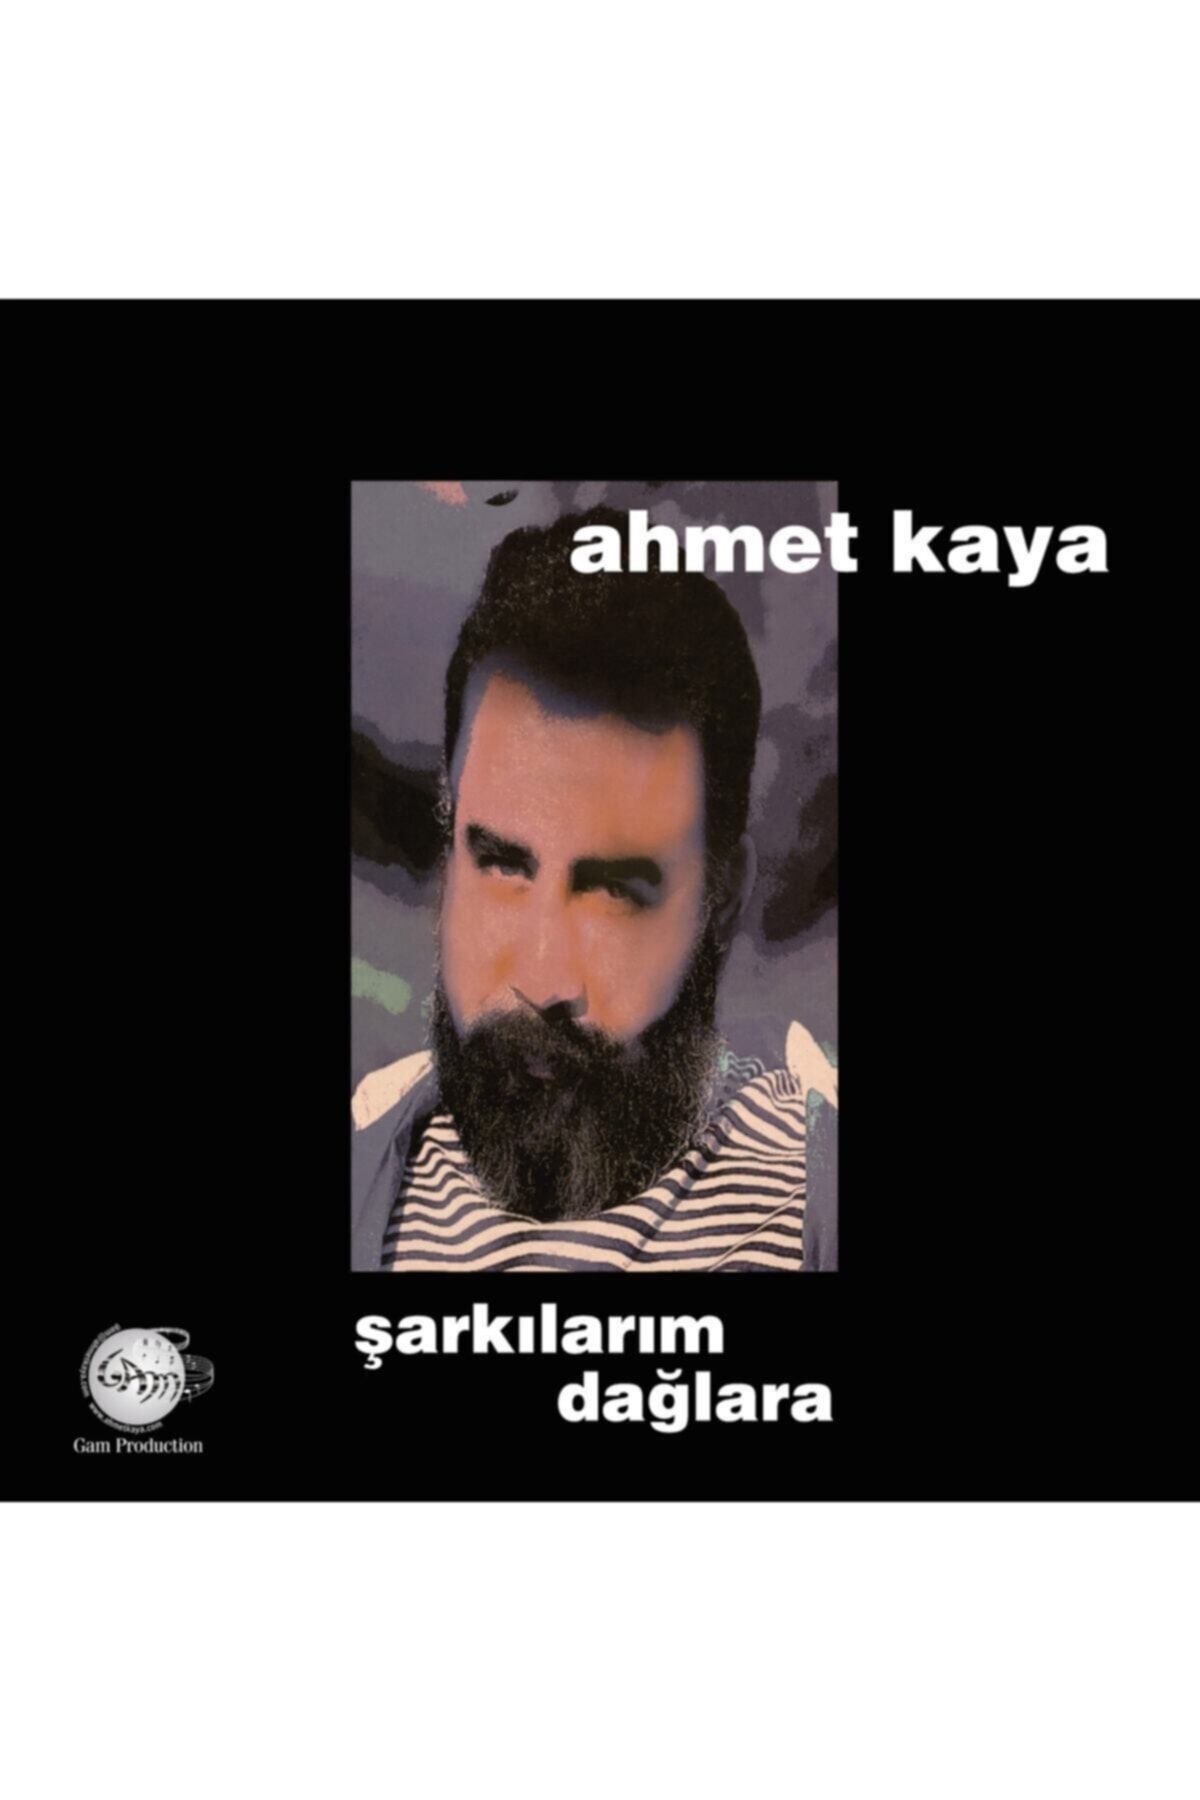 Ateş Müzik Ahmet Kaya Şarkılarım Dağlara LP